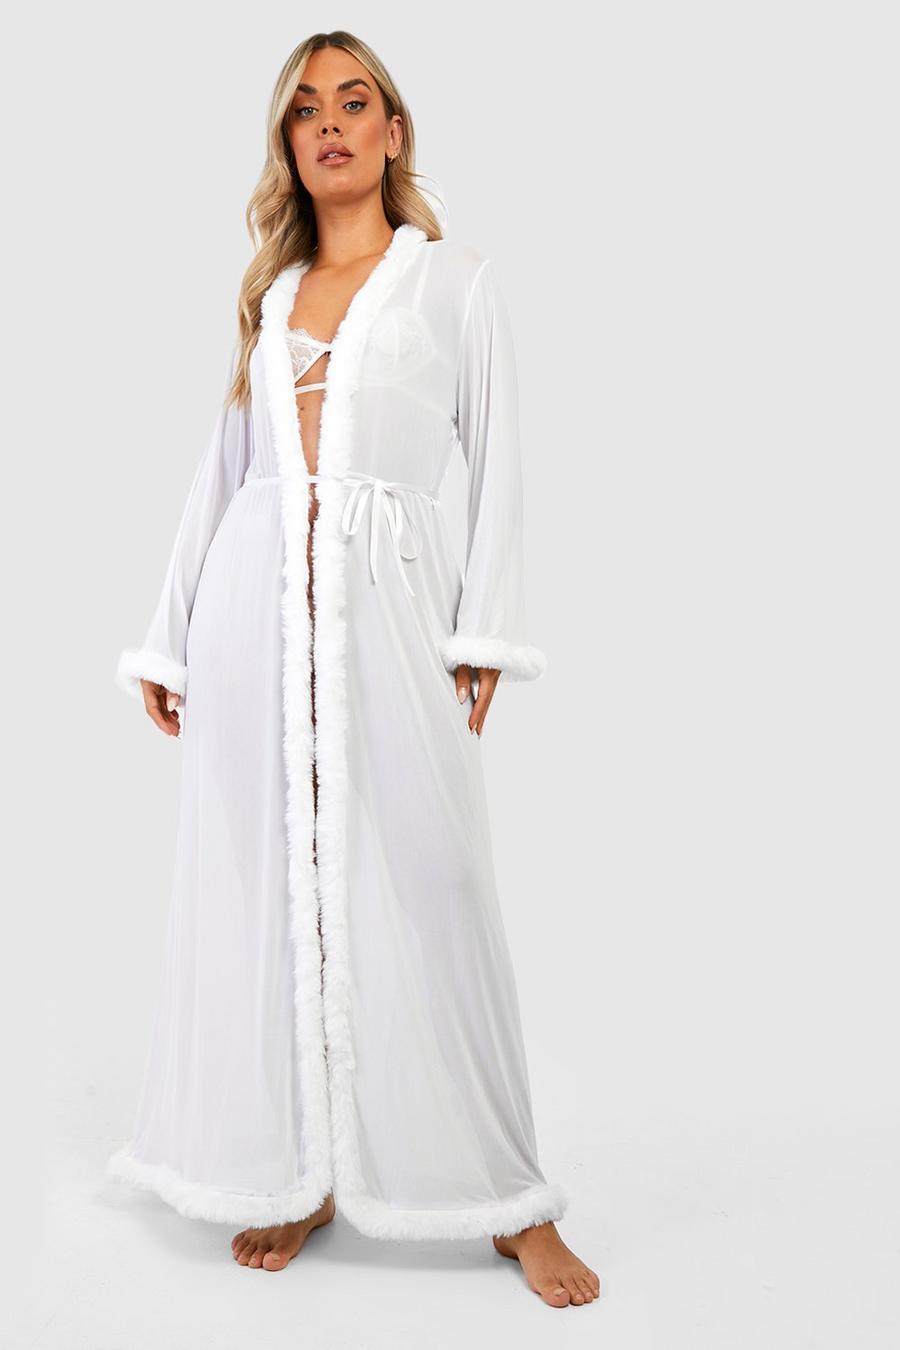 White vit Plus Kimono Robe With Fluffy Trim